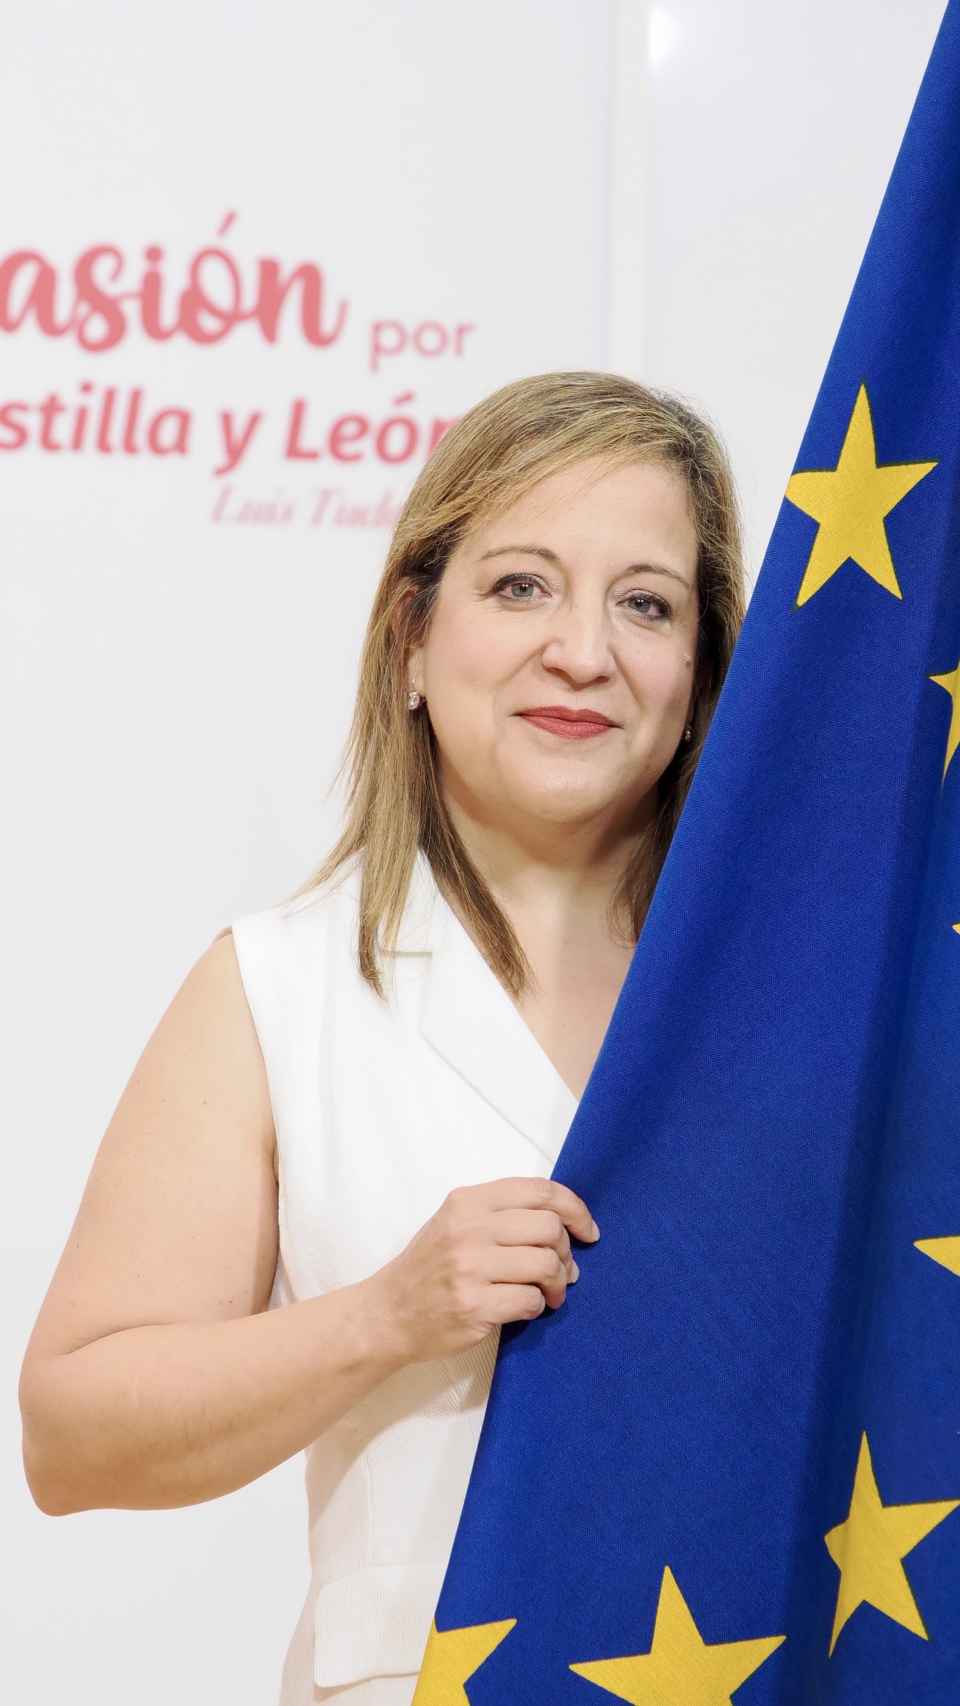 Iratxe García posa con la bandera de la Unión Europea